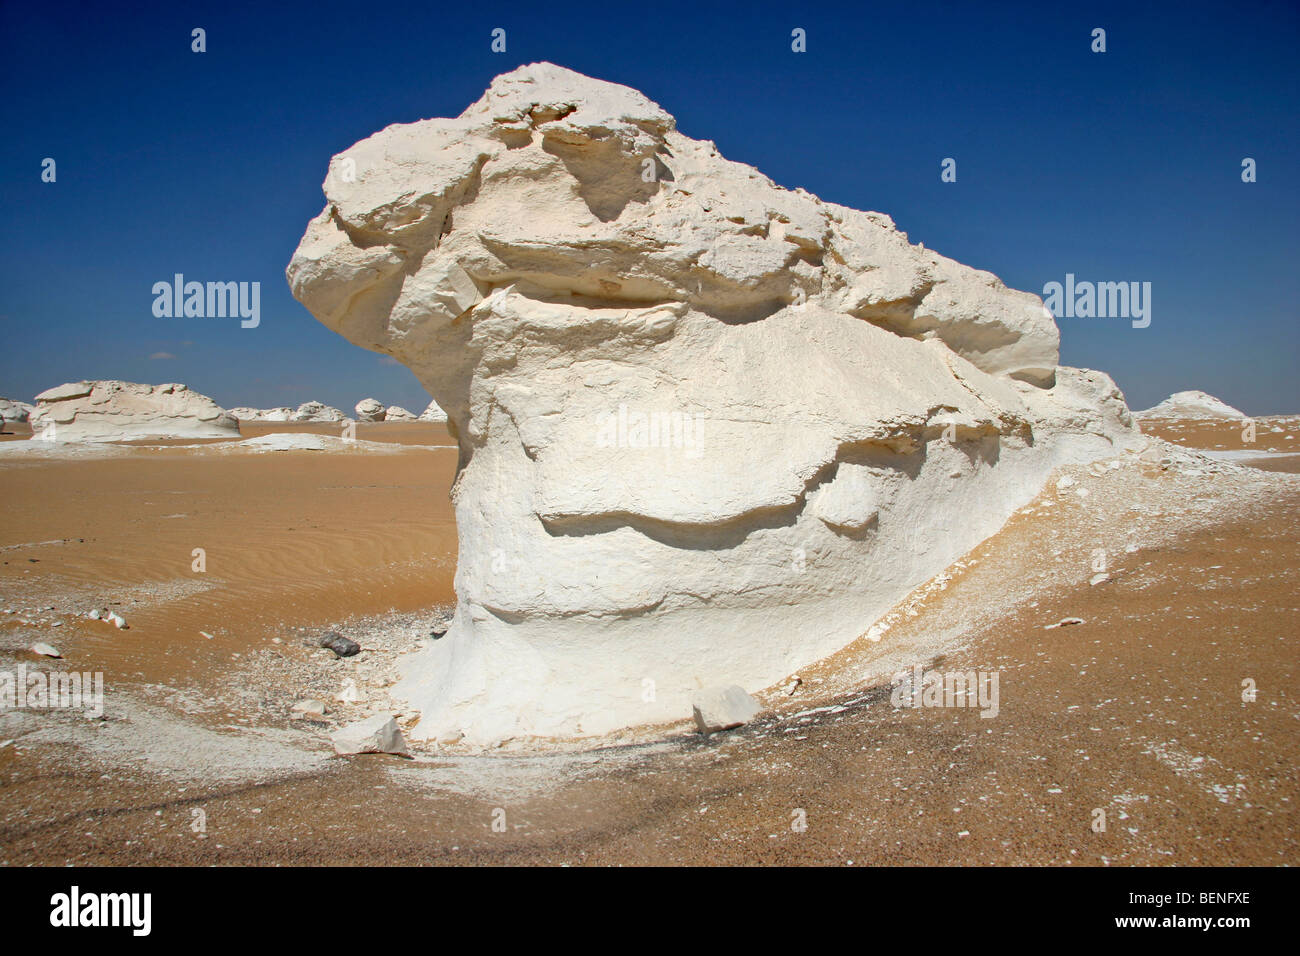 Roccia calcarea formazione nel Deserto Bianco Egitto / Sahara el Beyda nei pressi di Farafra nel deserto occidentale, Nord Africa Foto Stock